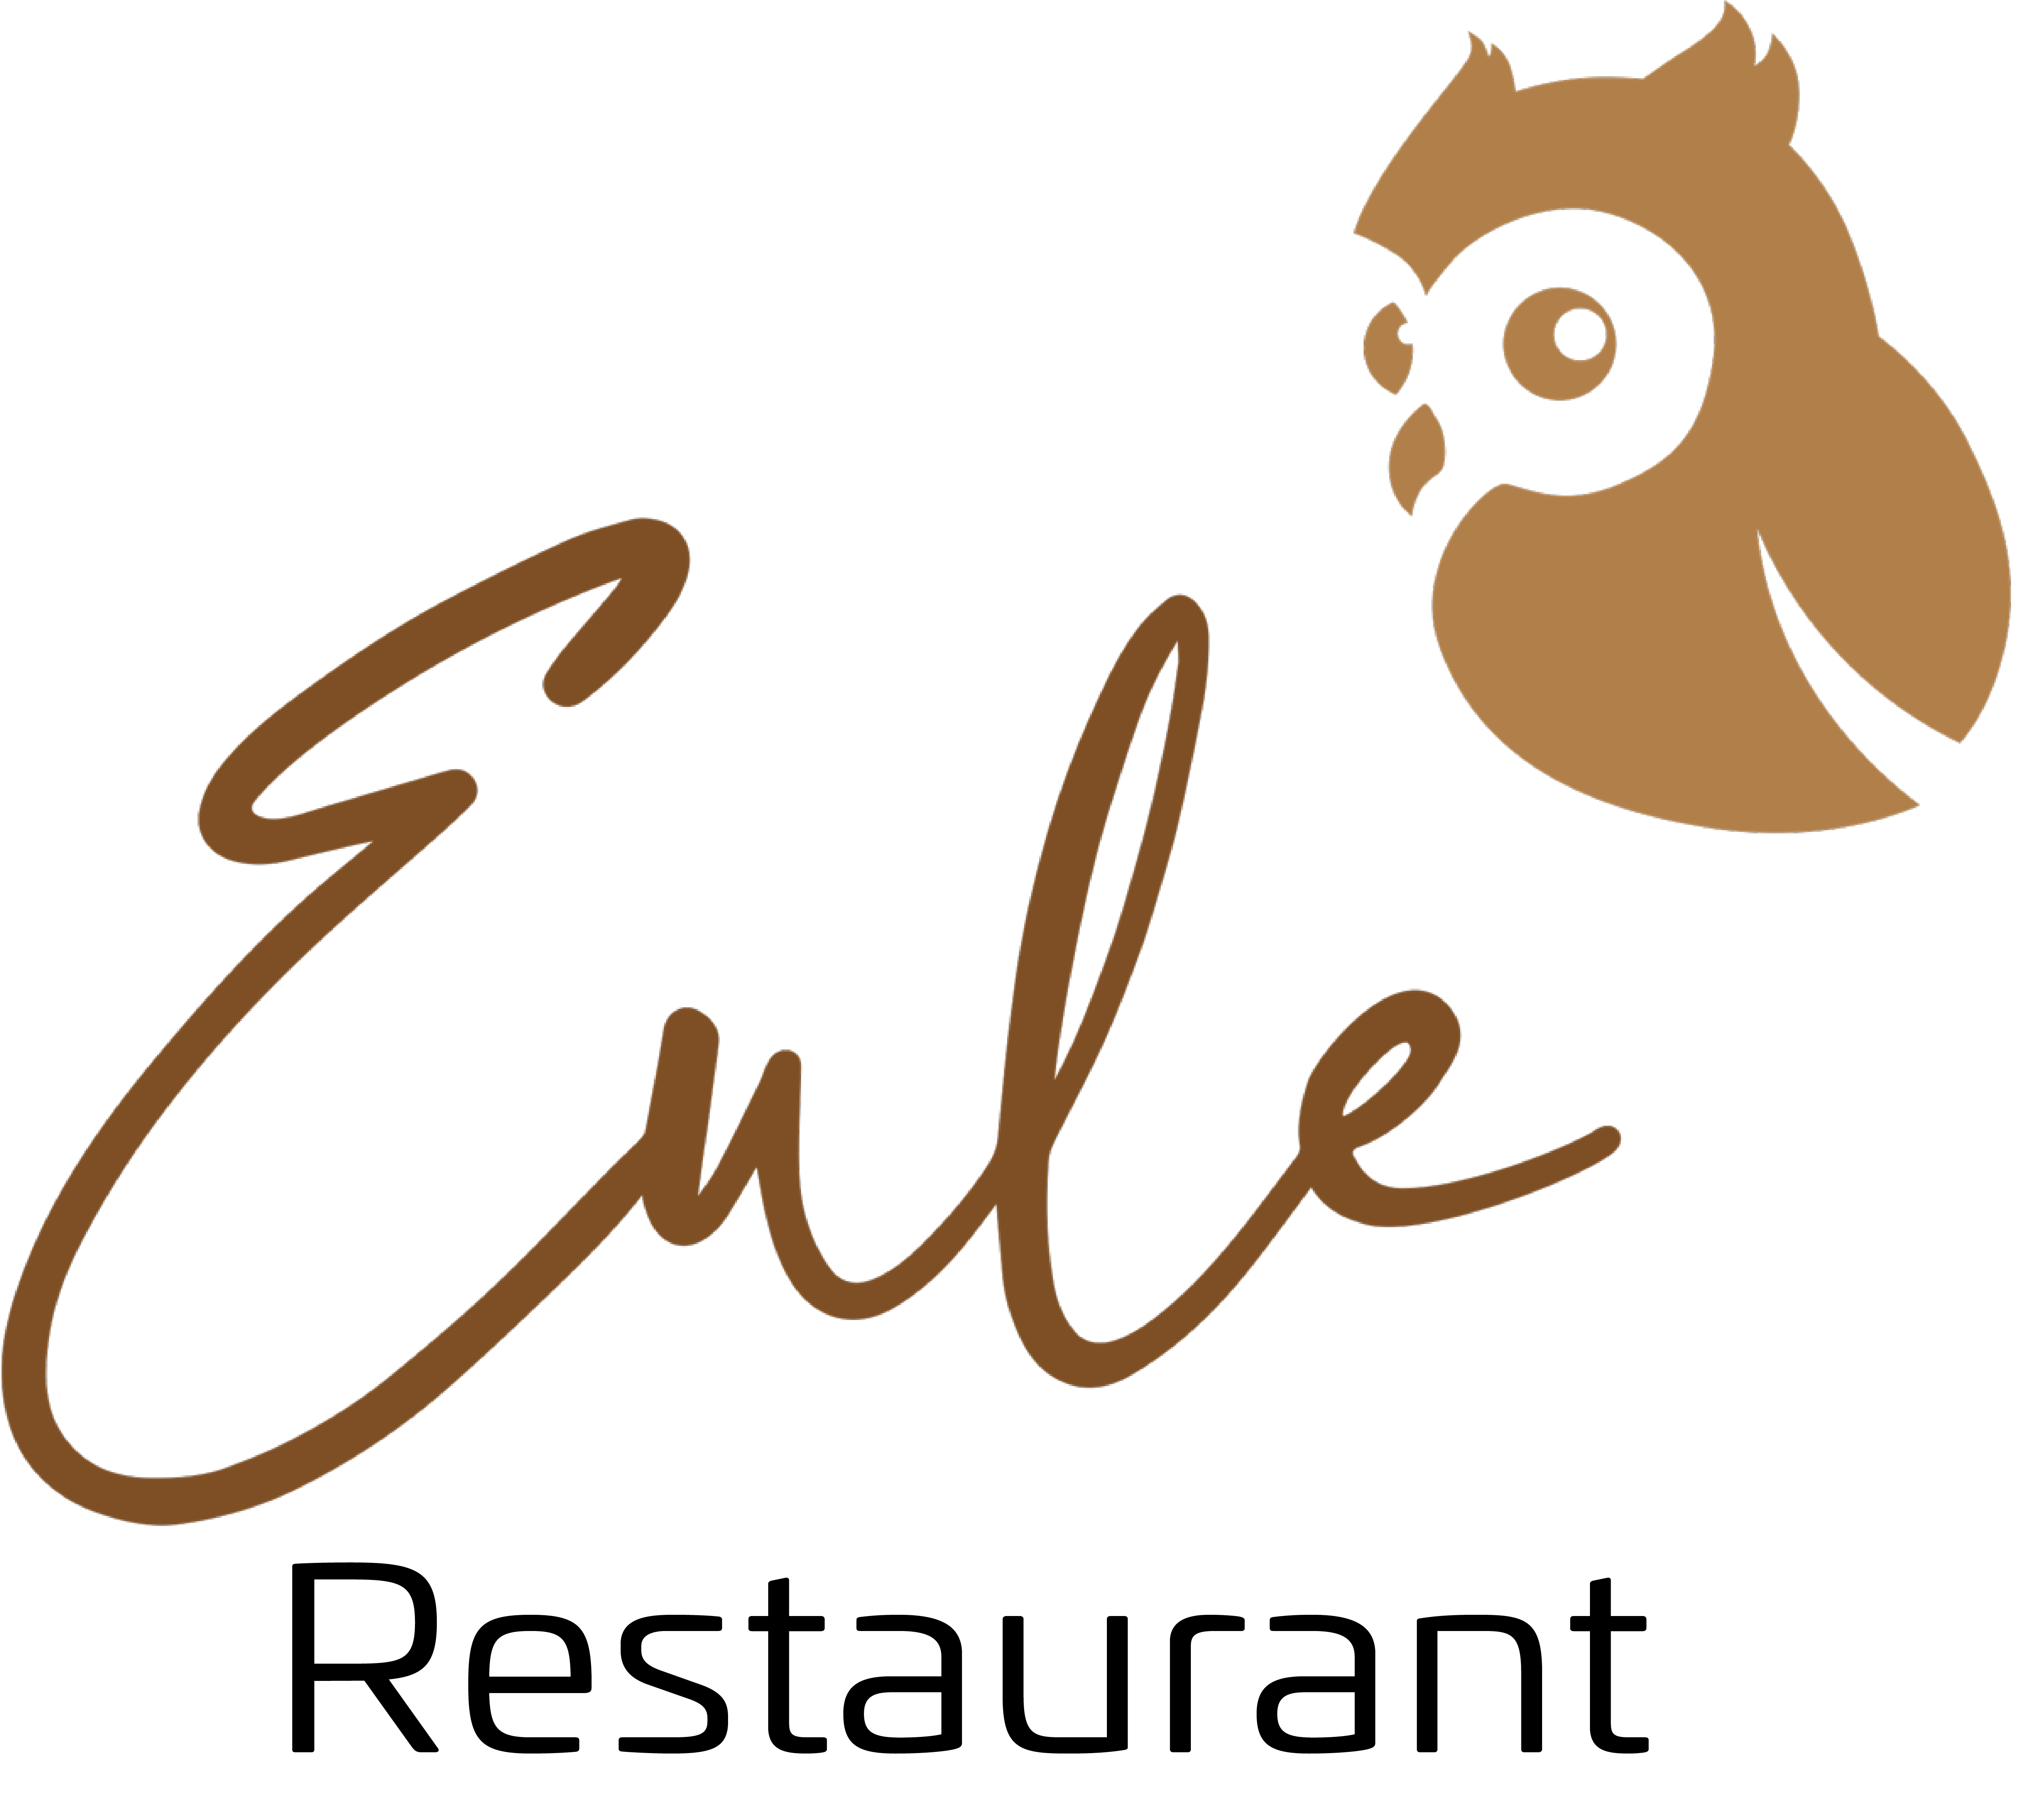 Eule Restaurant Logo